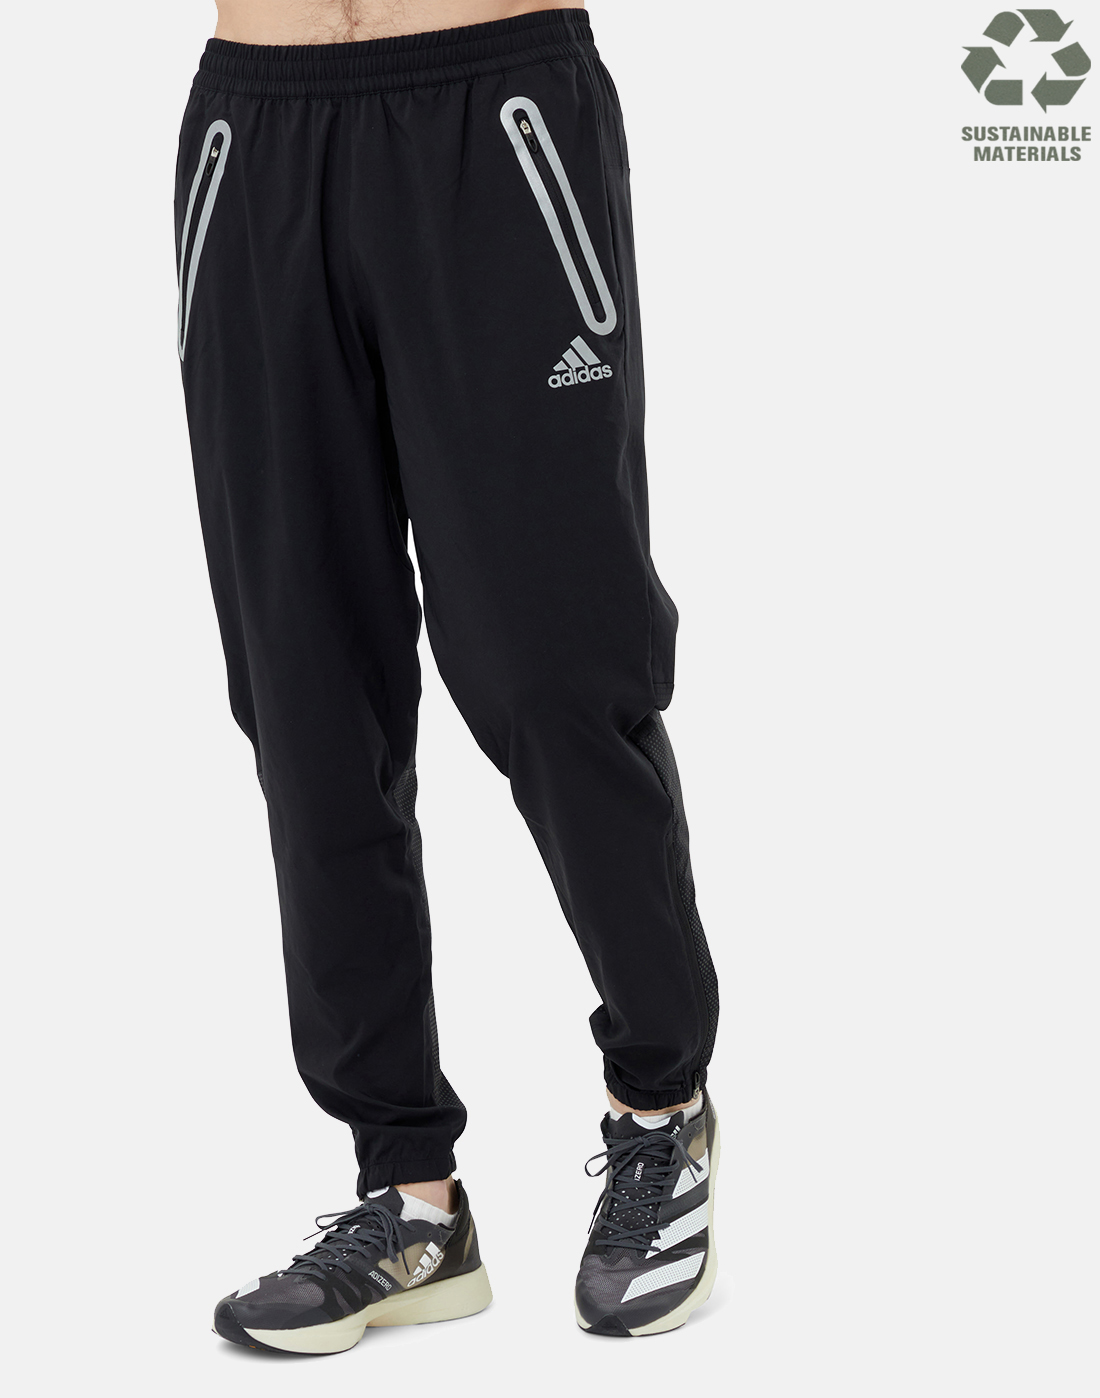 Adidas Running Short  Running trousers Girls  Buy online  Bergfreundeeu